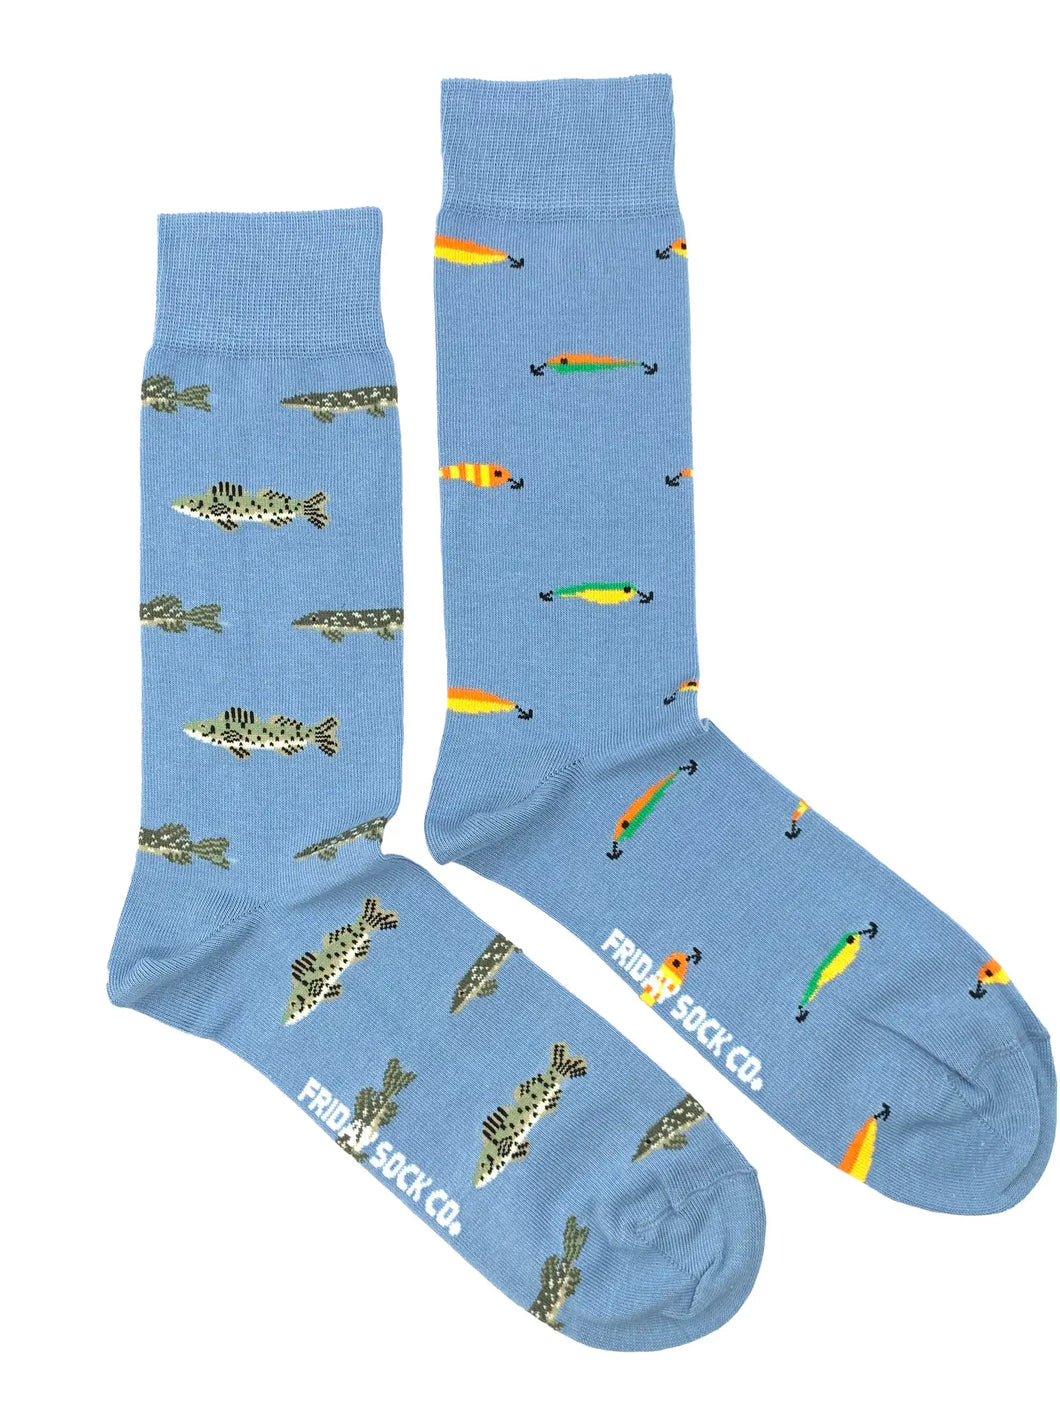 men's socks - fish & lures